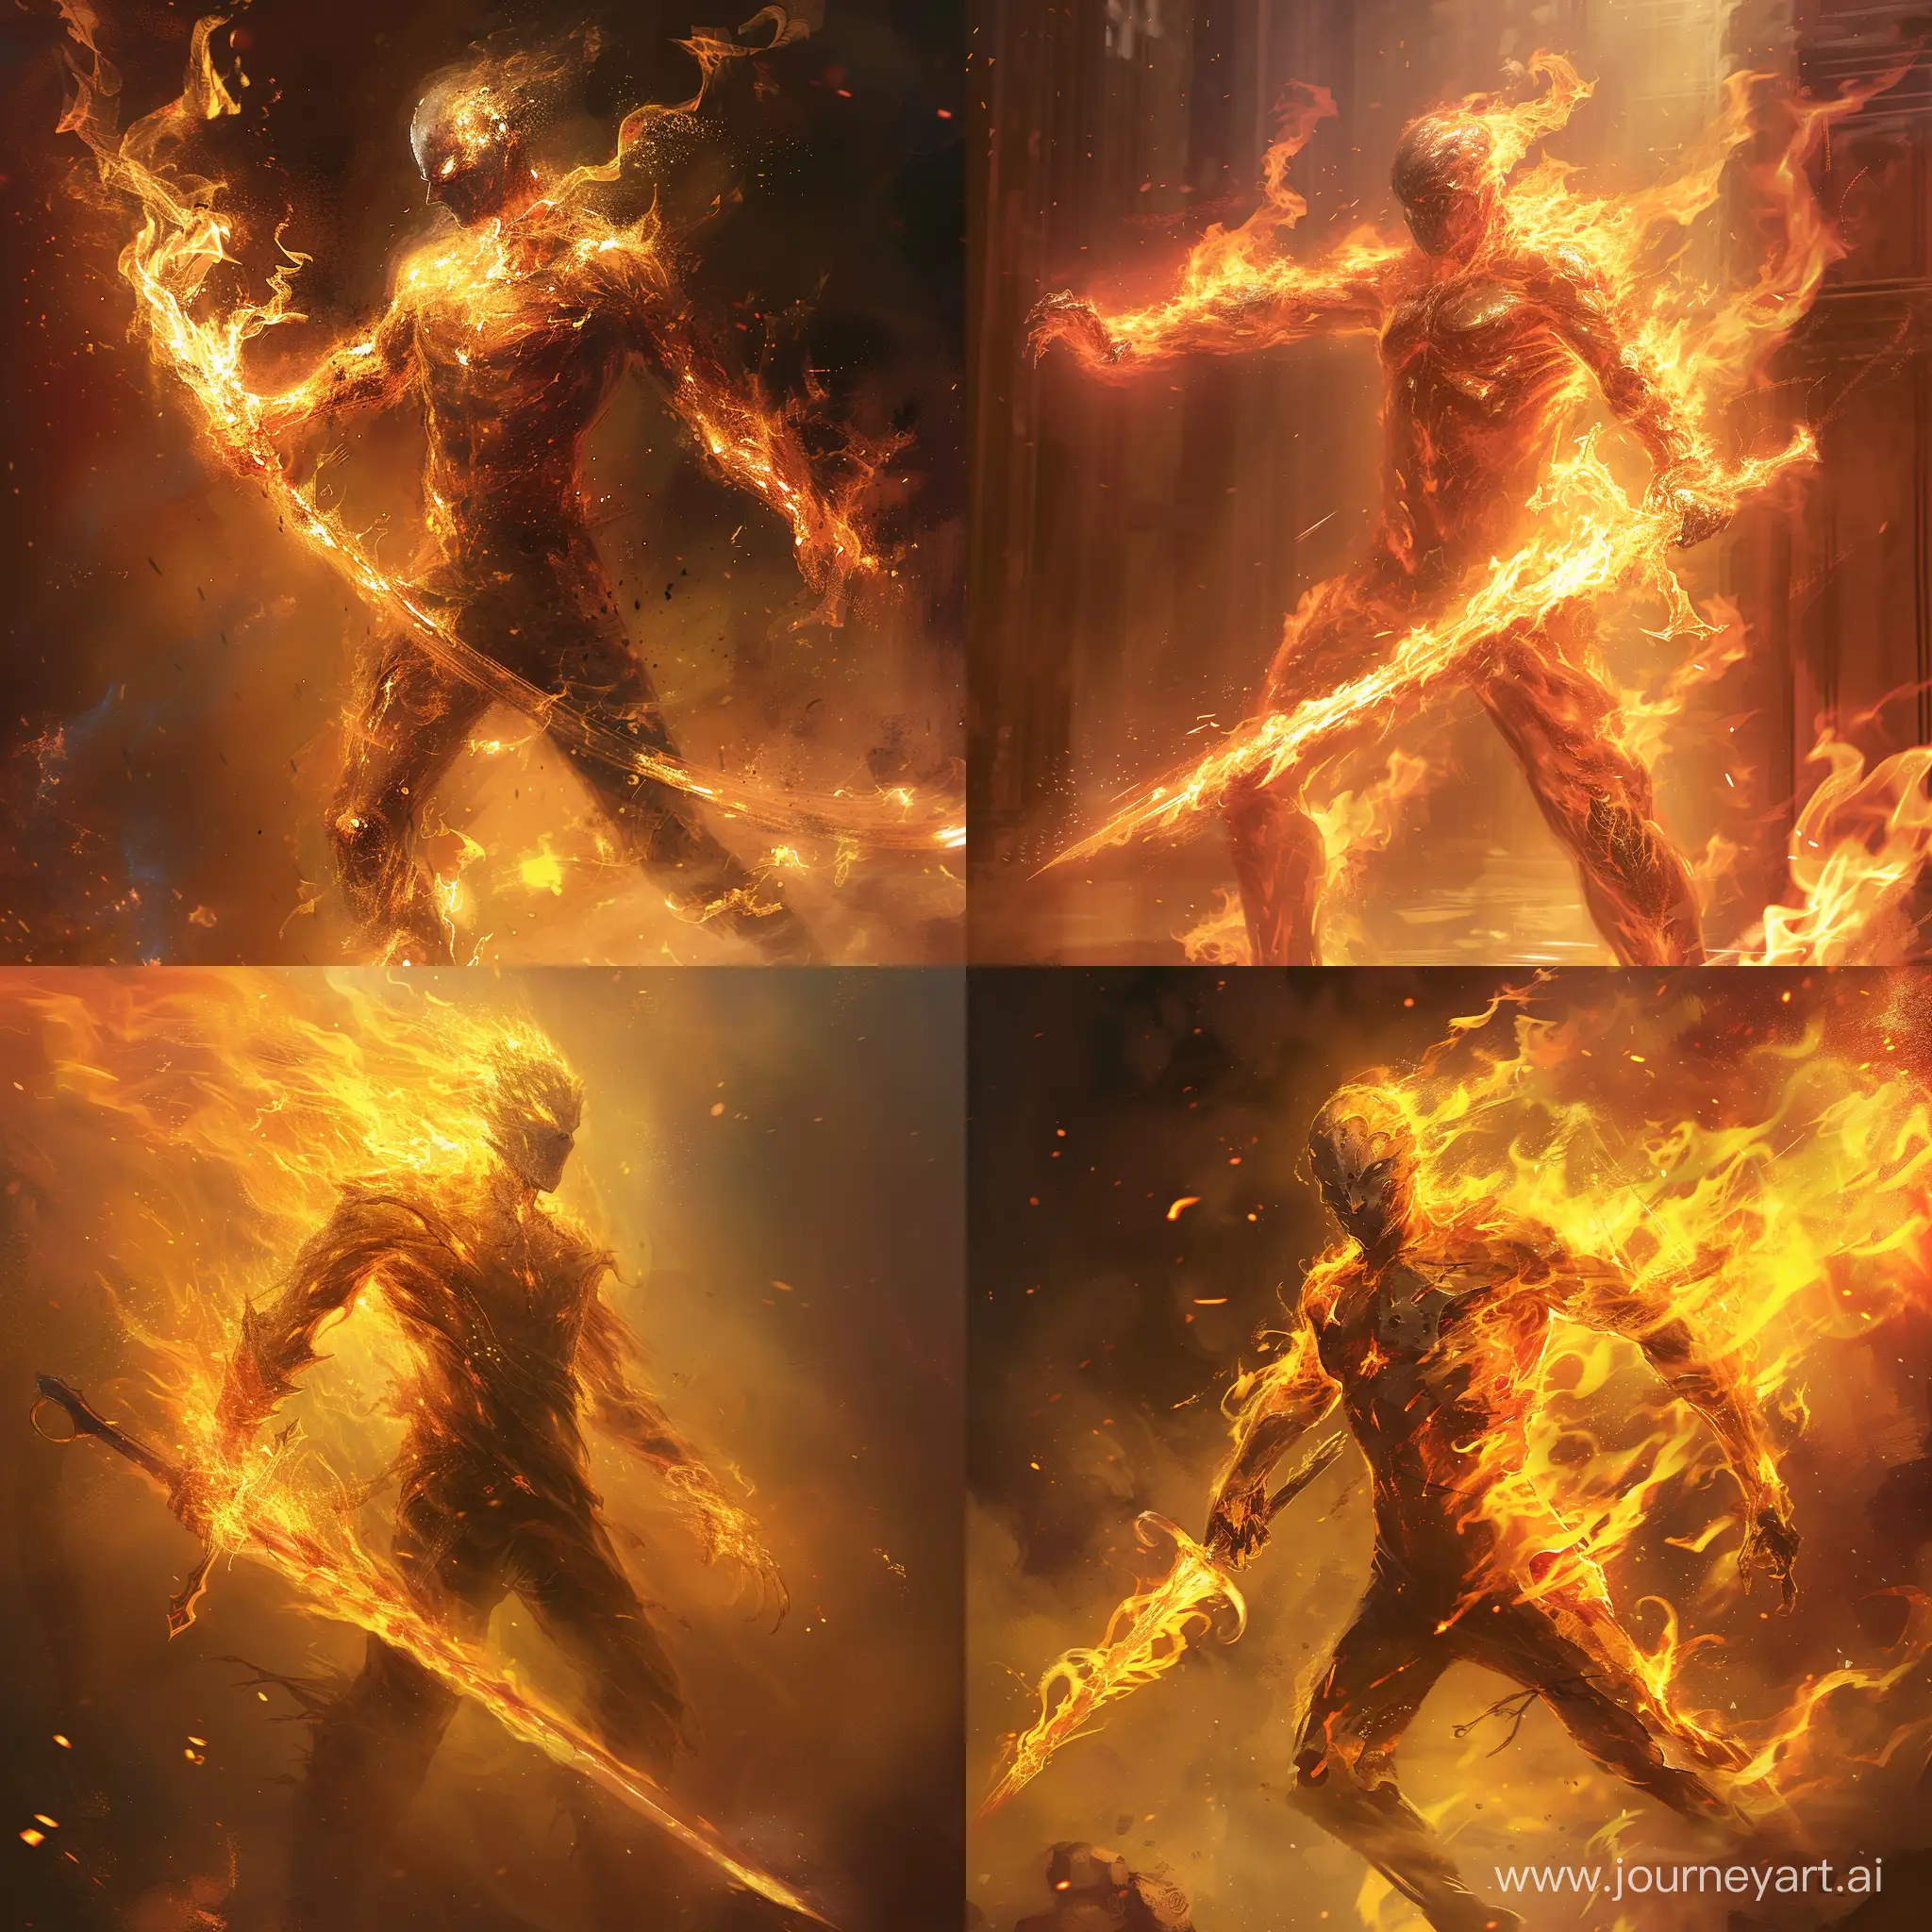 Fiery-Figure-Wielding-FlameForged-Rapier-in-Infernal-Ambiance